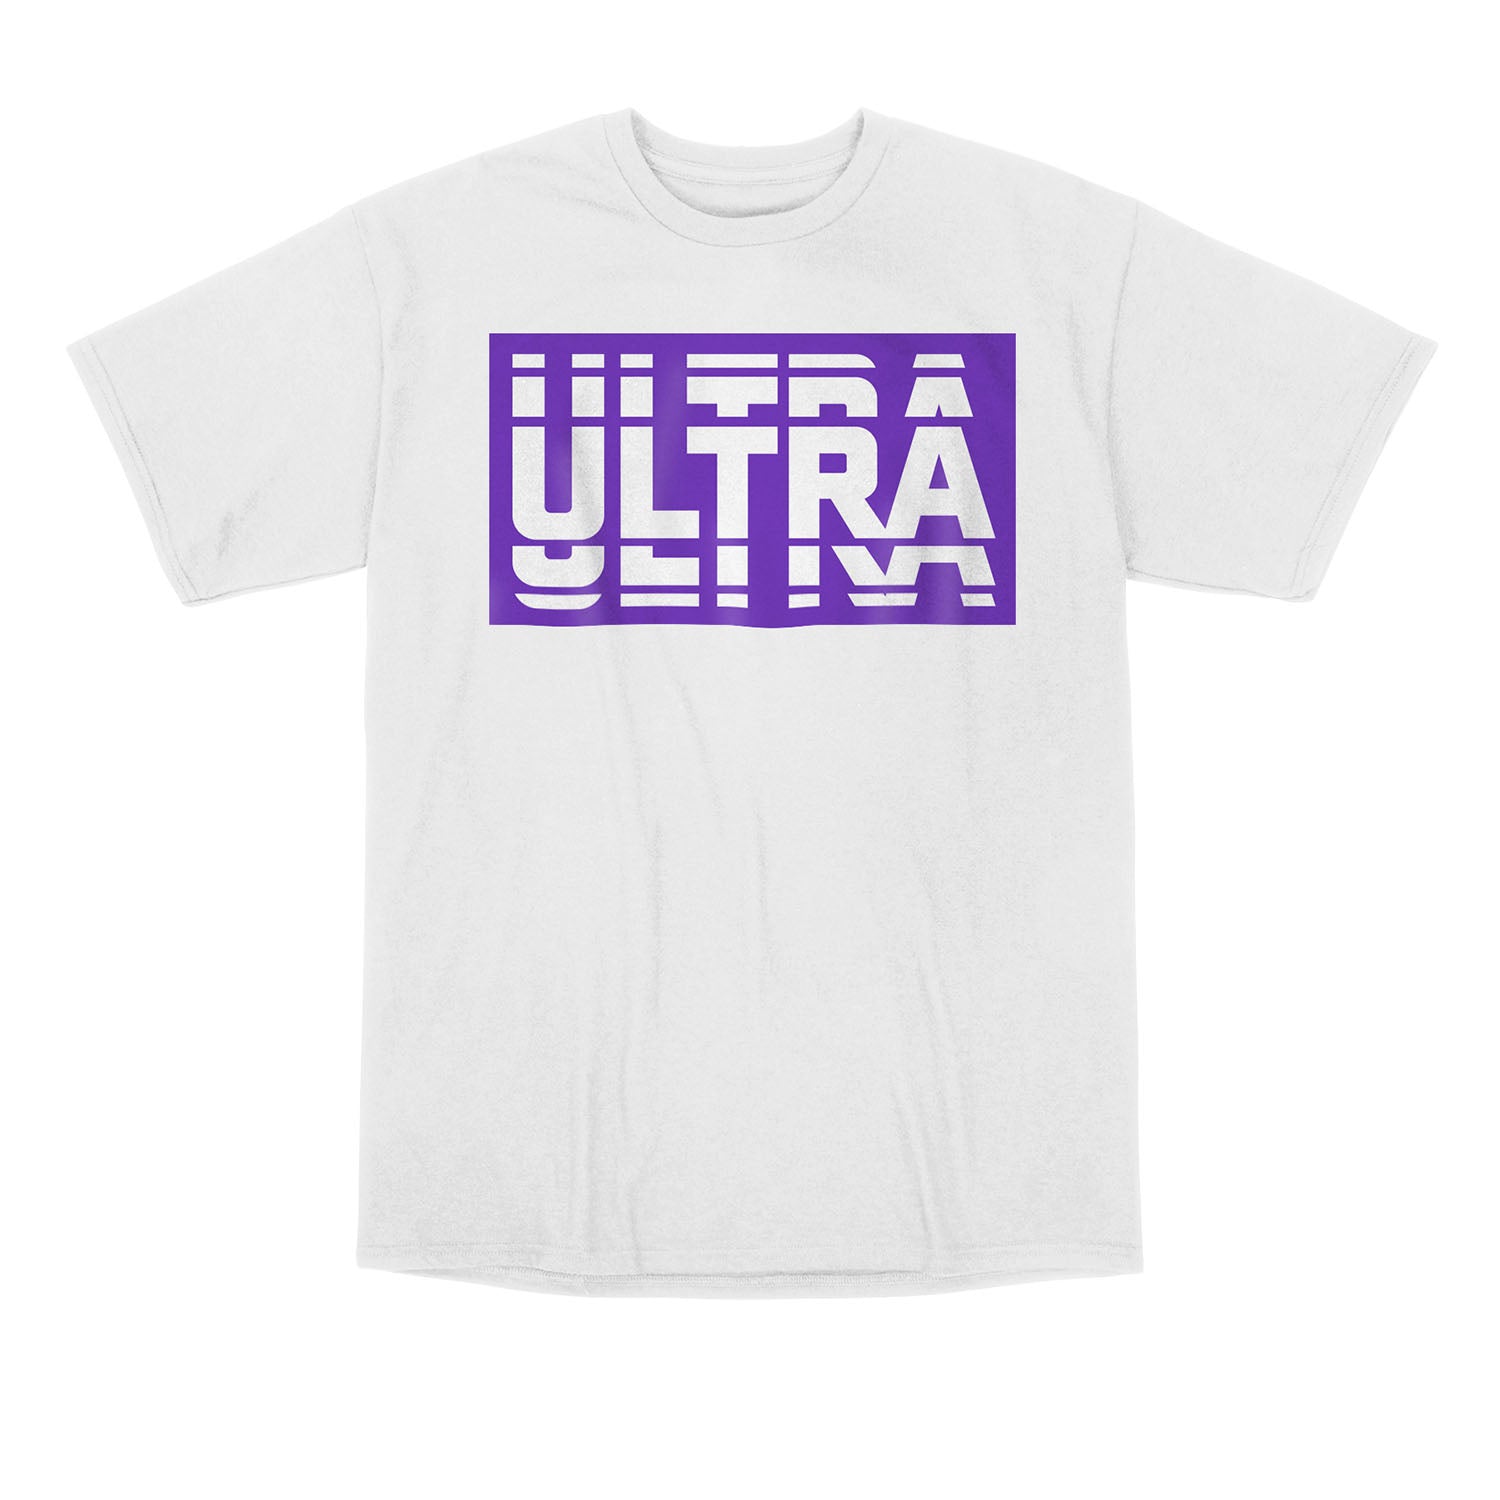 Toronto Ulta White Native T-Shirt - Front View